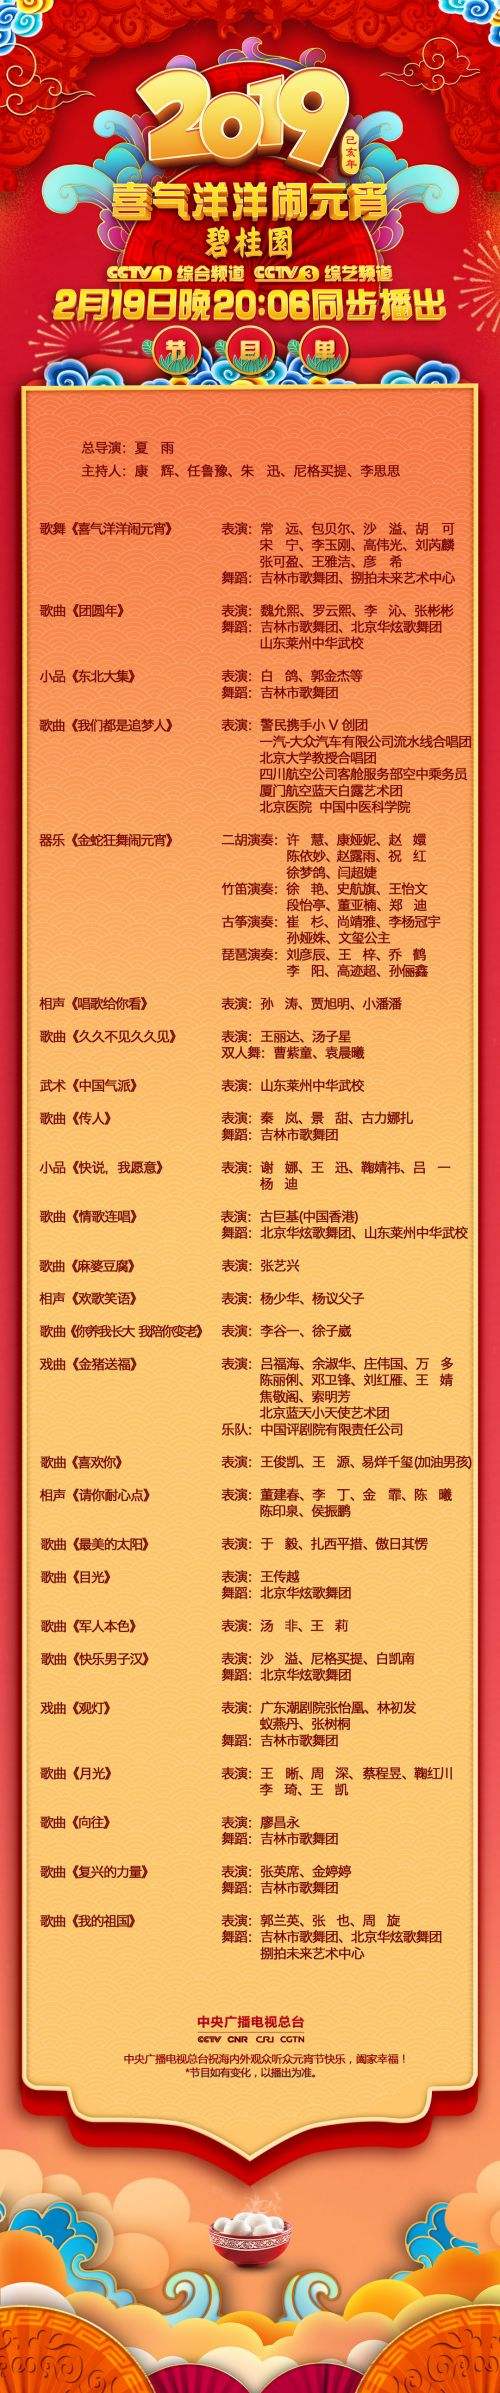 CCTV5今日节目单(cctv5十今日节目单表)